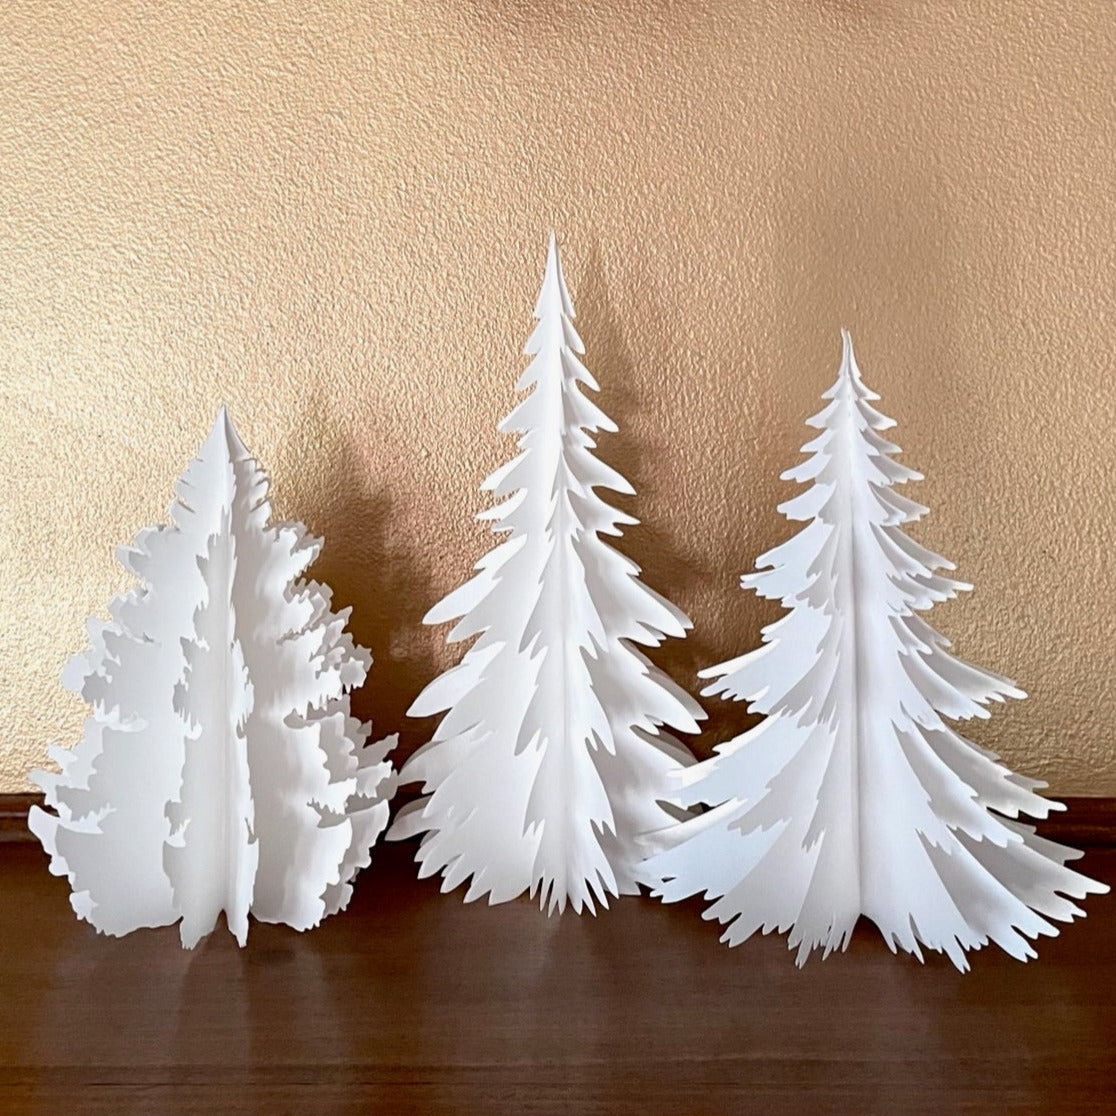 DIY Paper Pine Trees Kit, Large Set of 3